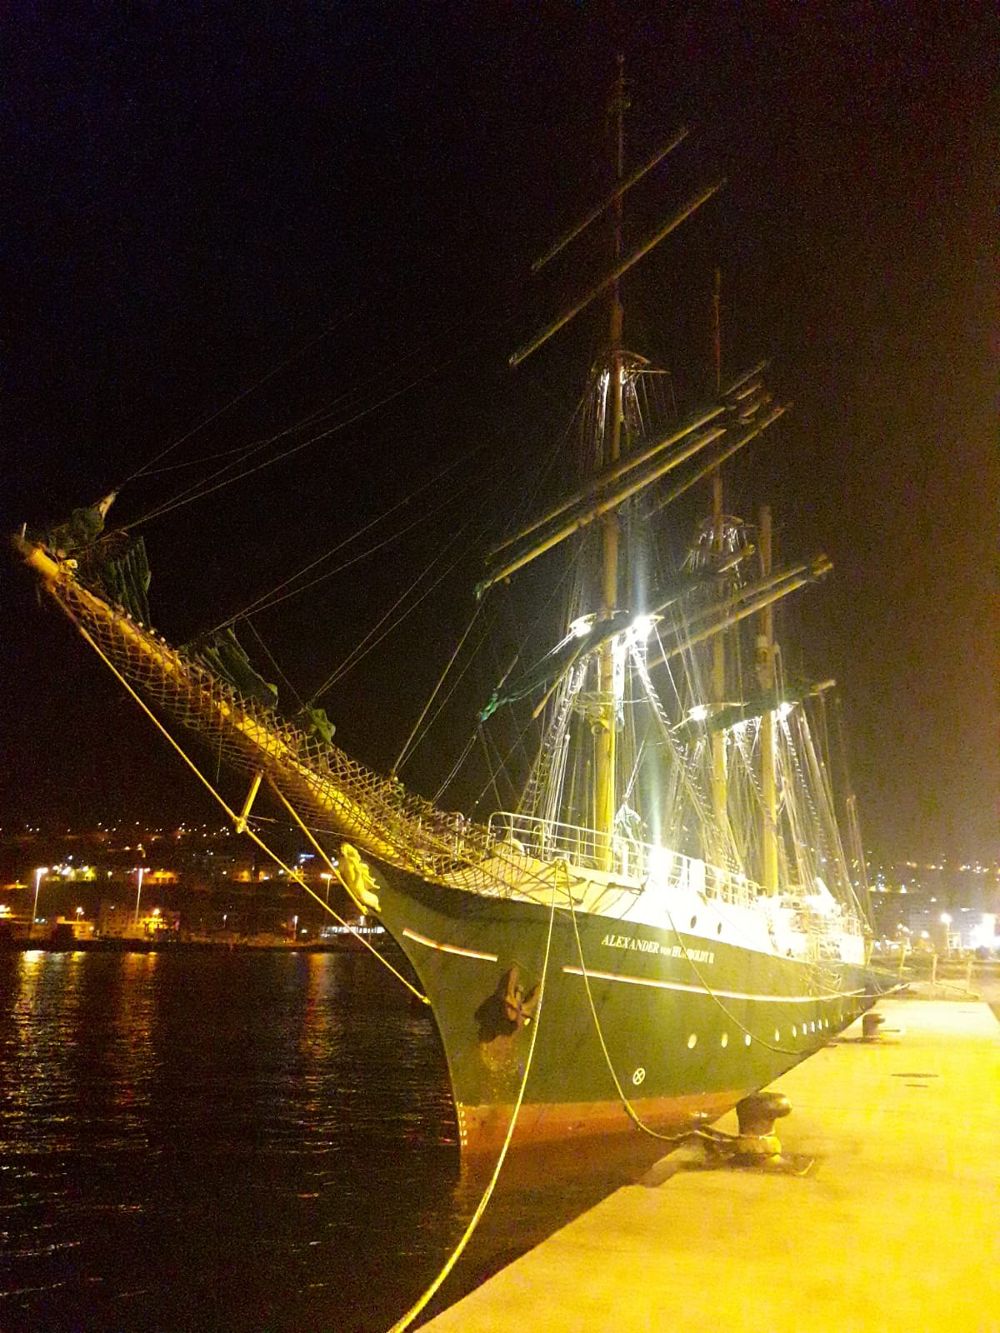 El velero "Alexander von Humboldt II", atracado en La Palma la noche de Navidad.